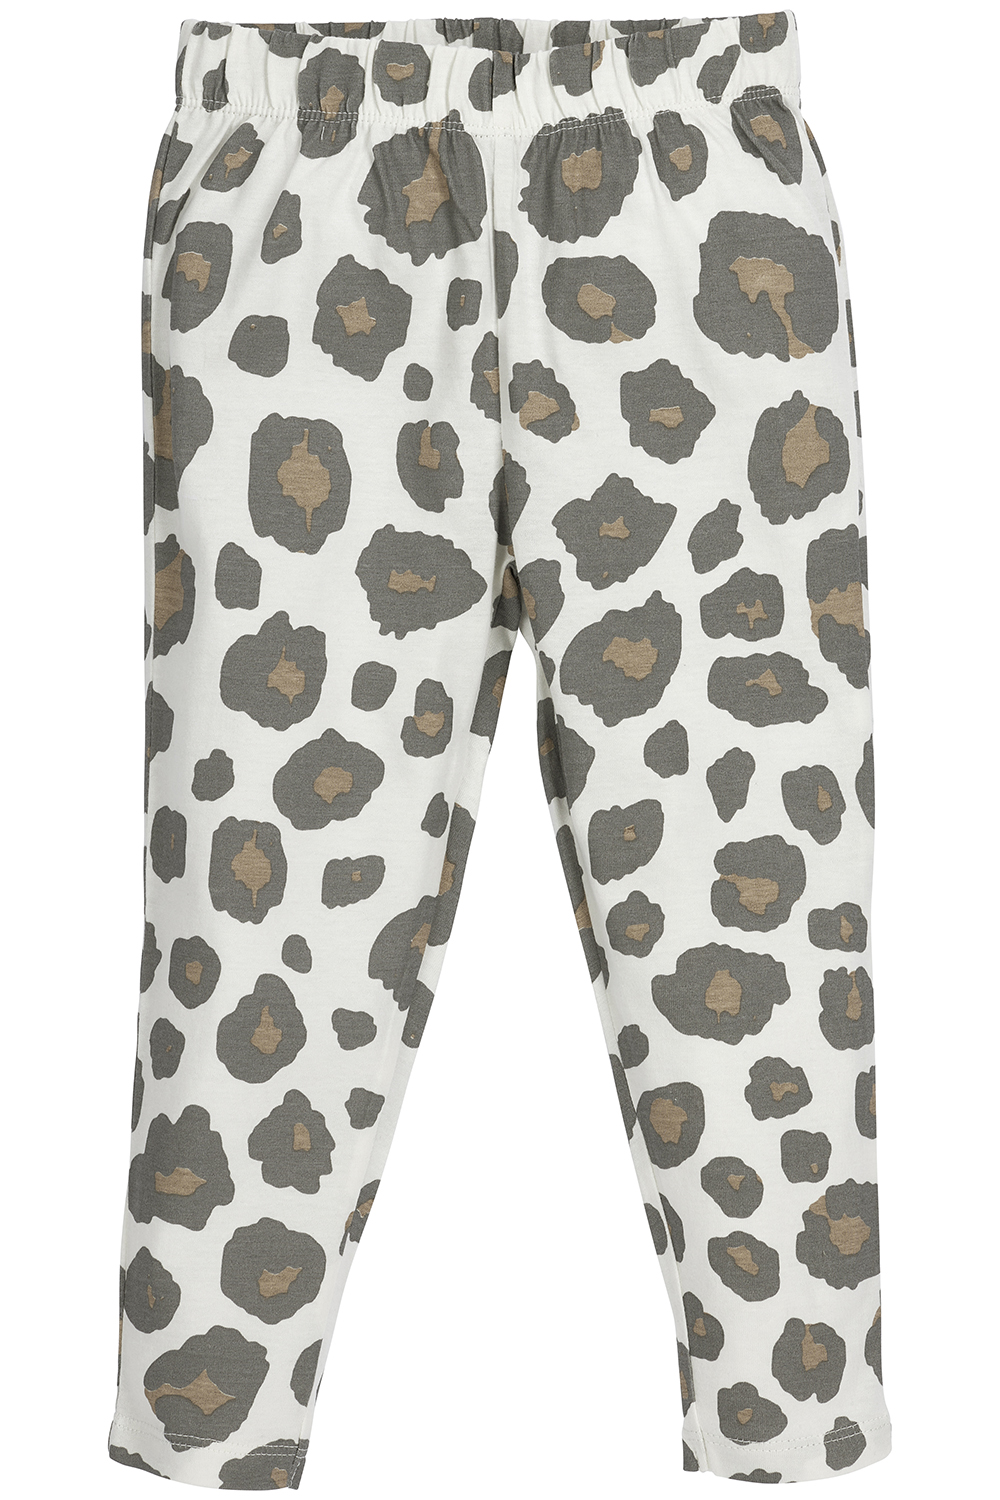 Pyjamas Panther - neutral - 98/104